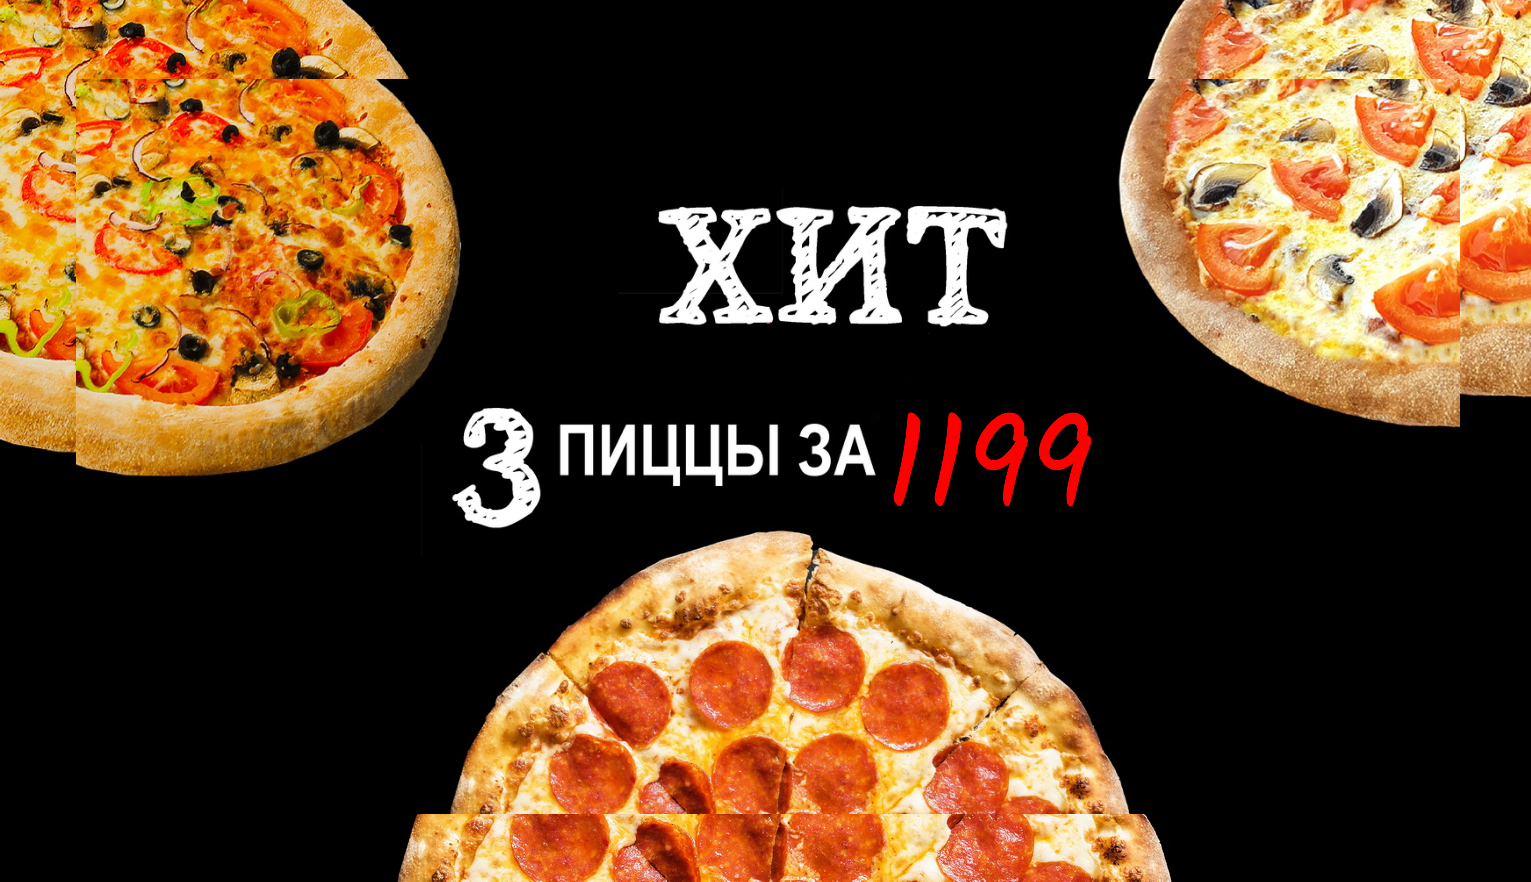 цены на пиццу фото фото 71